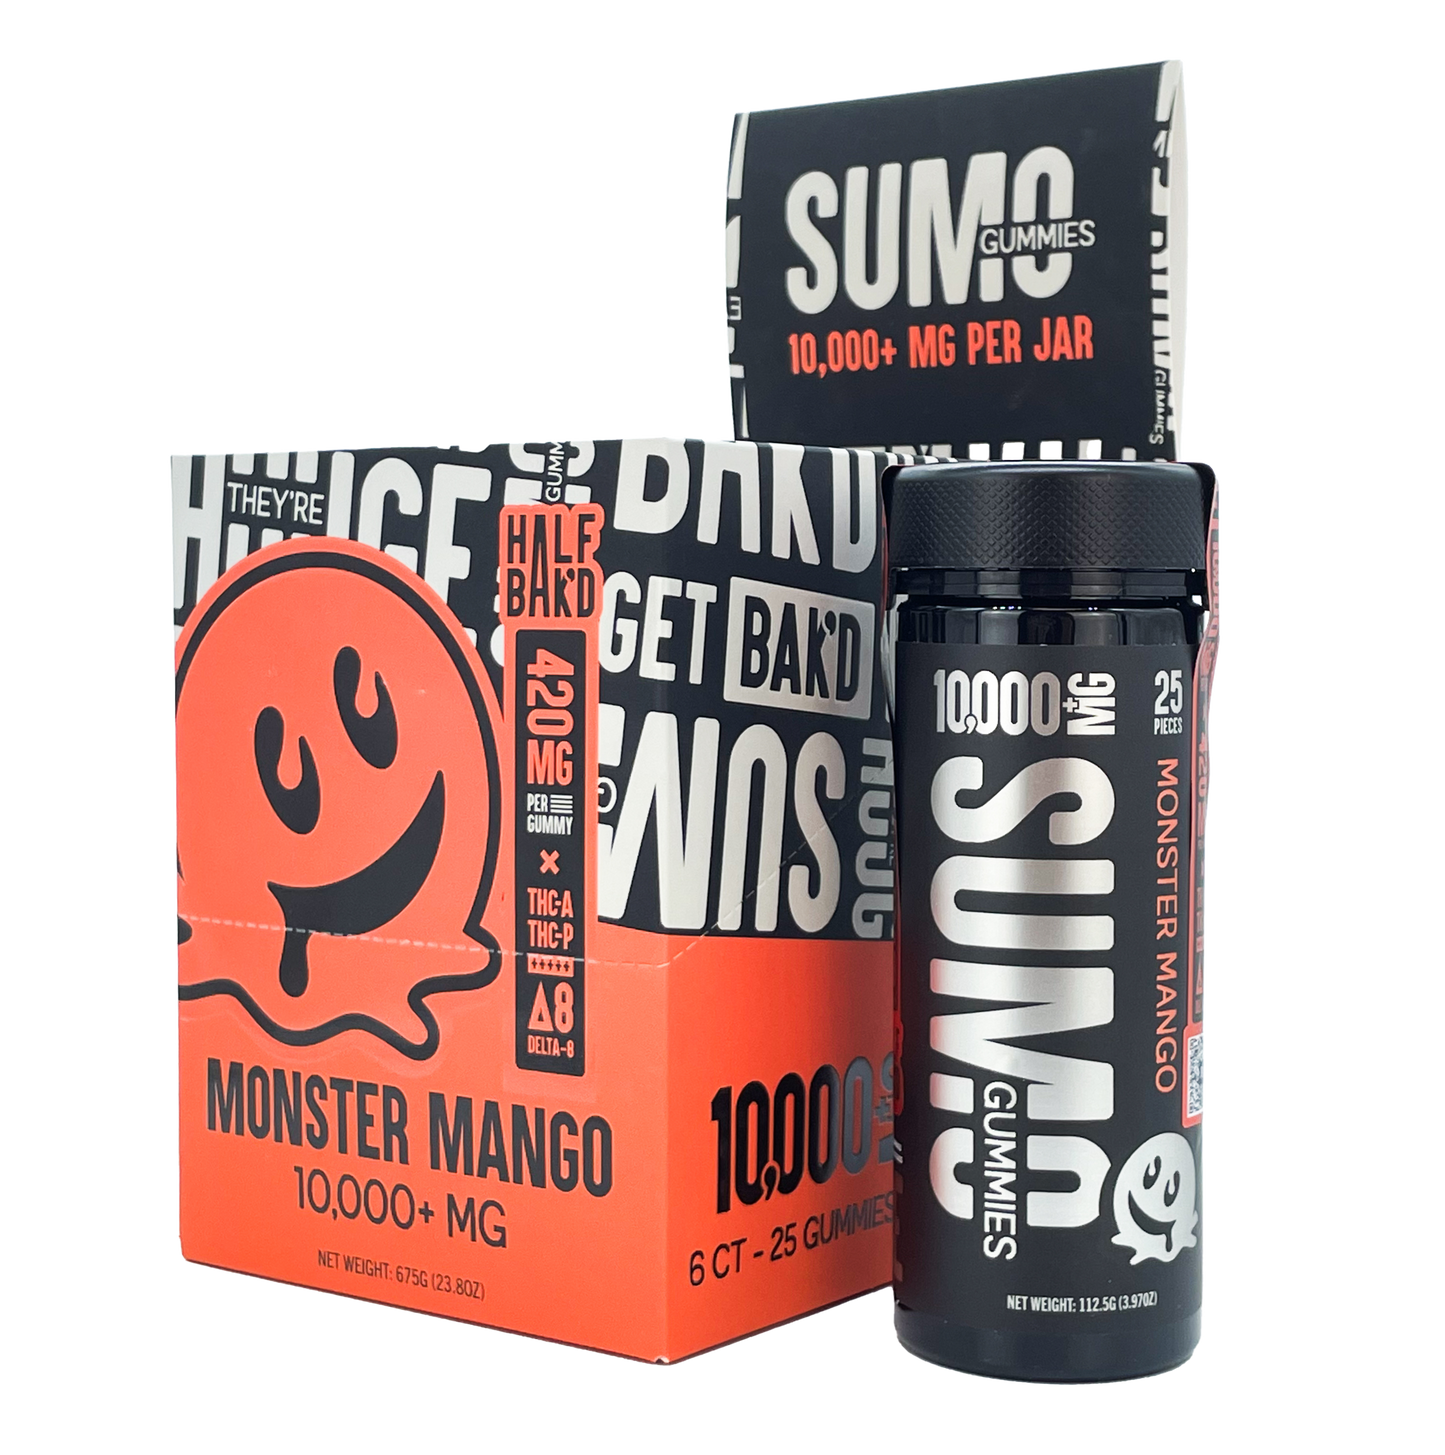 Half Bak'd - Sumo THC-A/THC-P/D9 Gummies 10,000mg 25ct